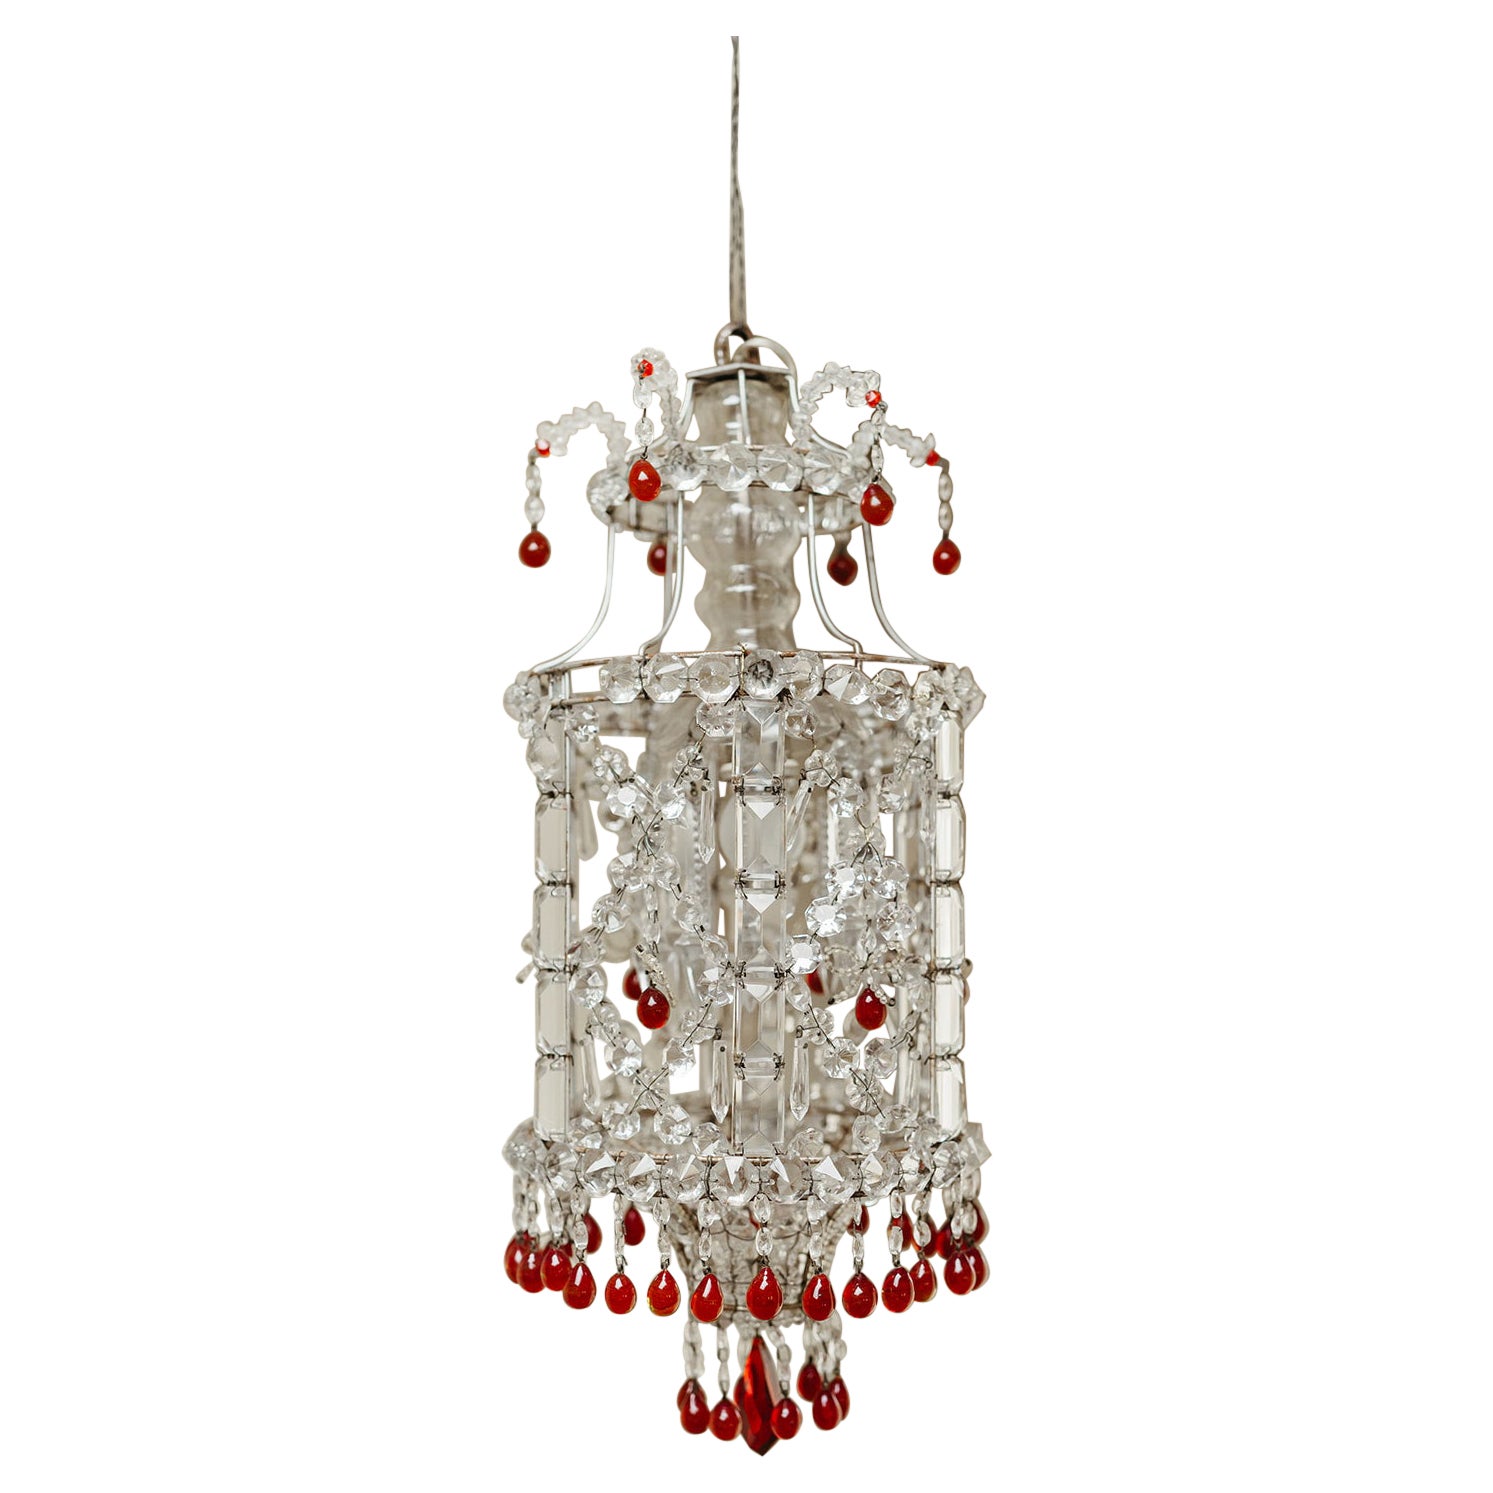 1930's Italian glass chandelier ...  For Sale